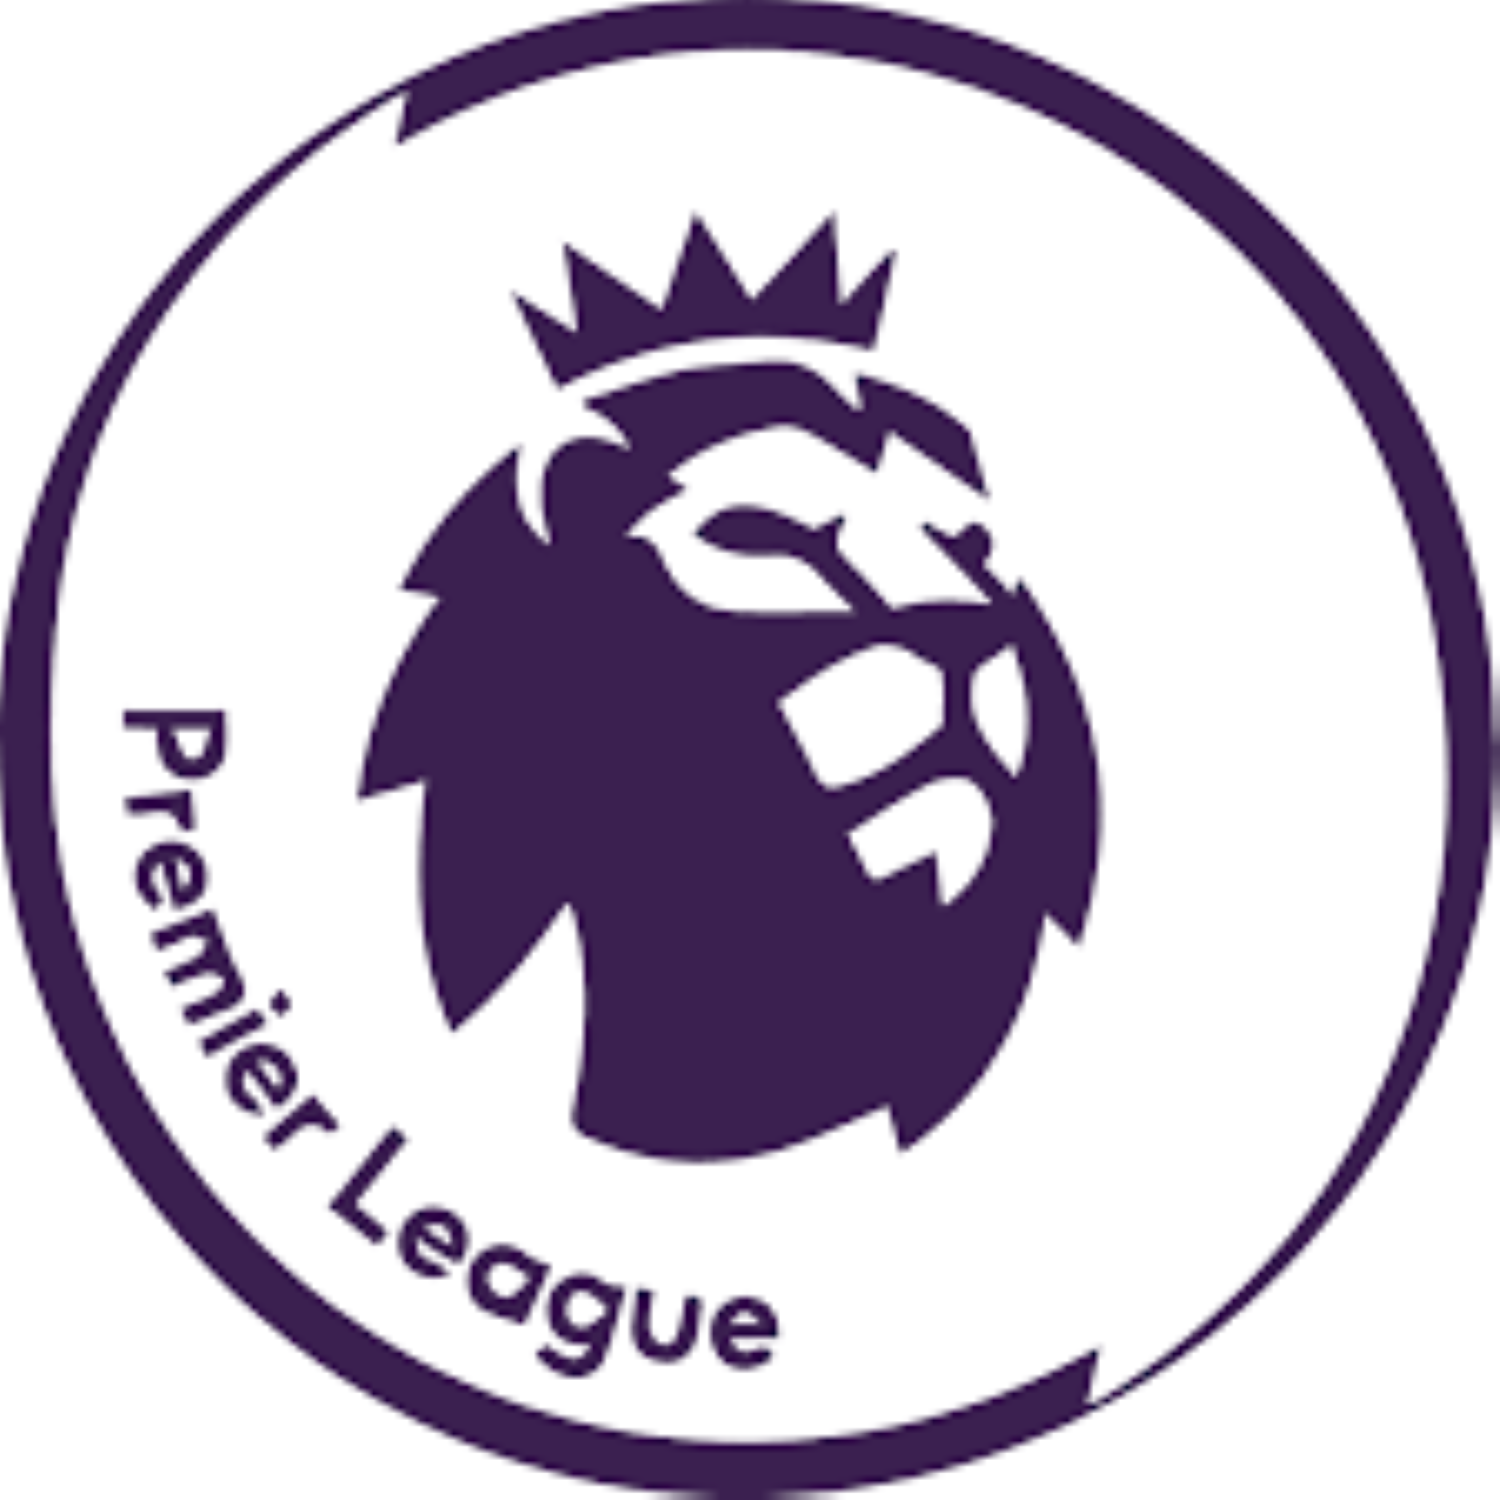 premier-league-s-plans-for-return-of-fans-face-british-government-review